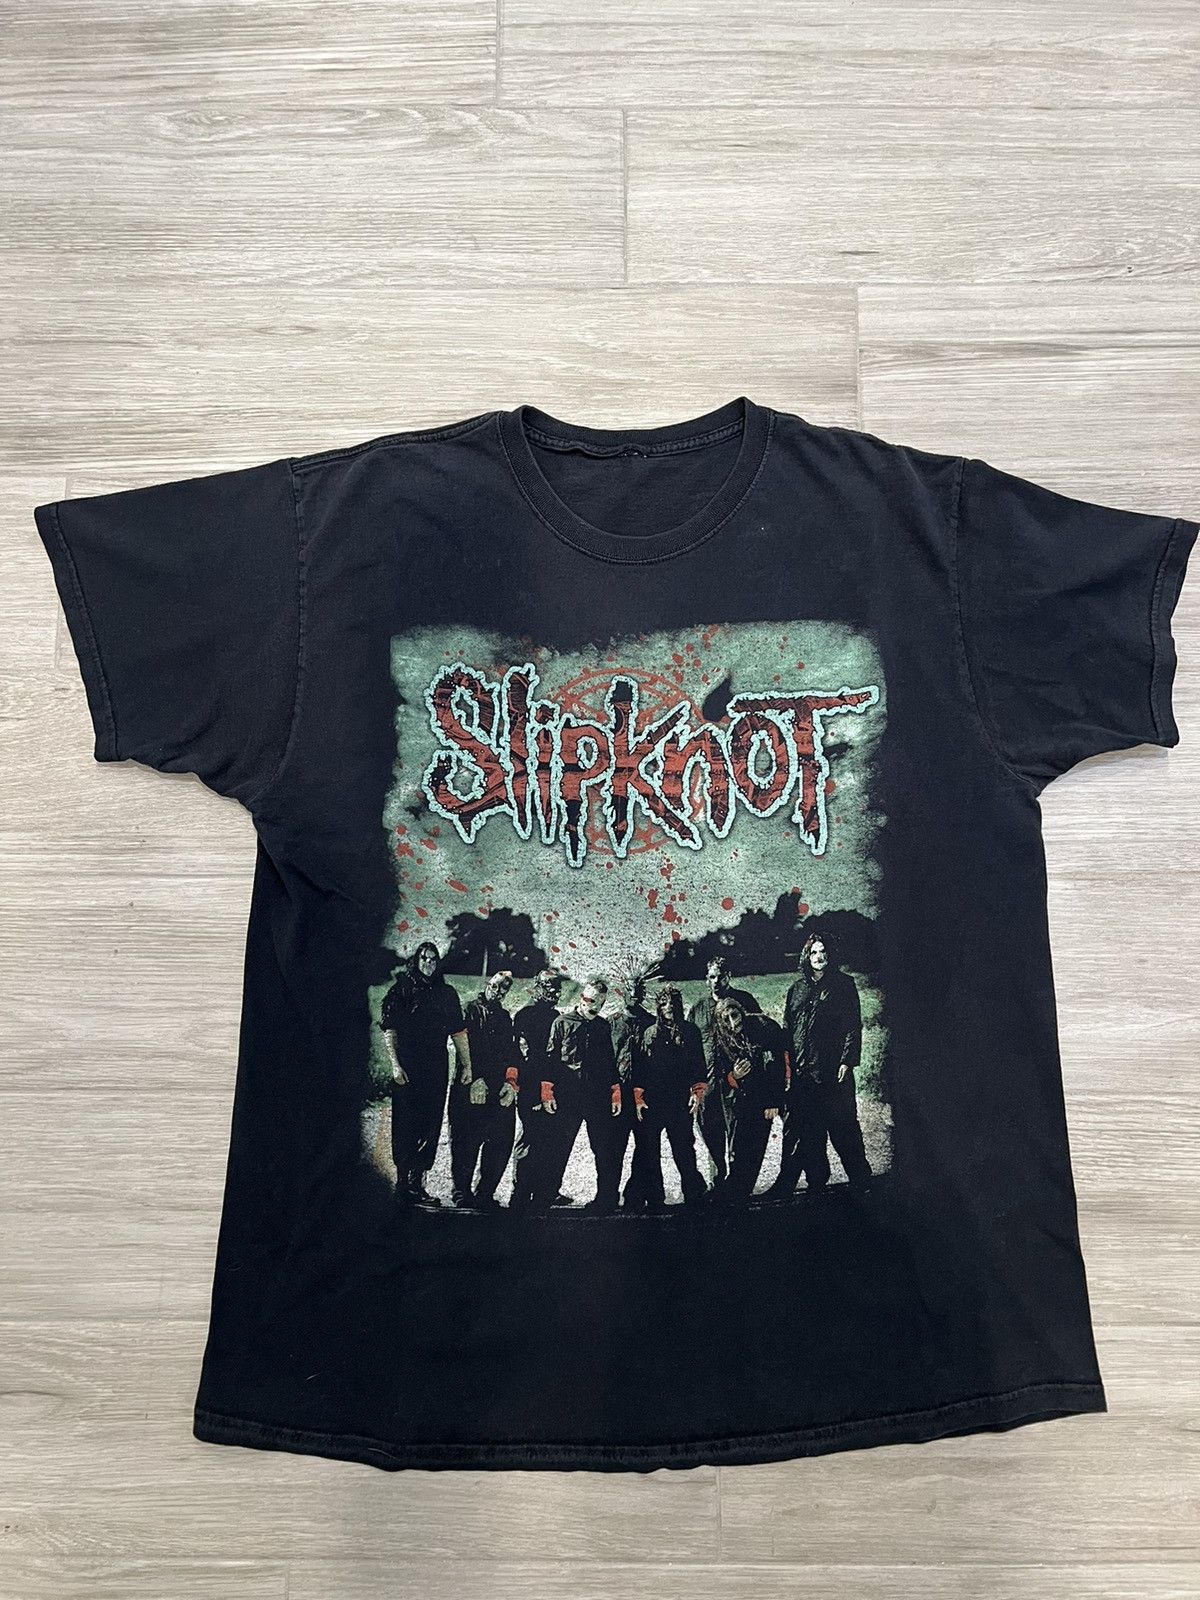 Slipknot Slipknot. Tag cut. | Grailed